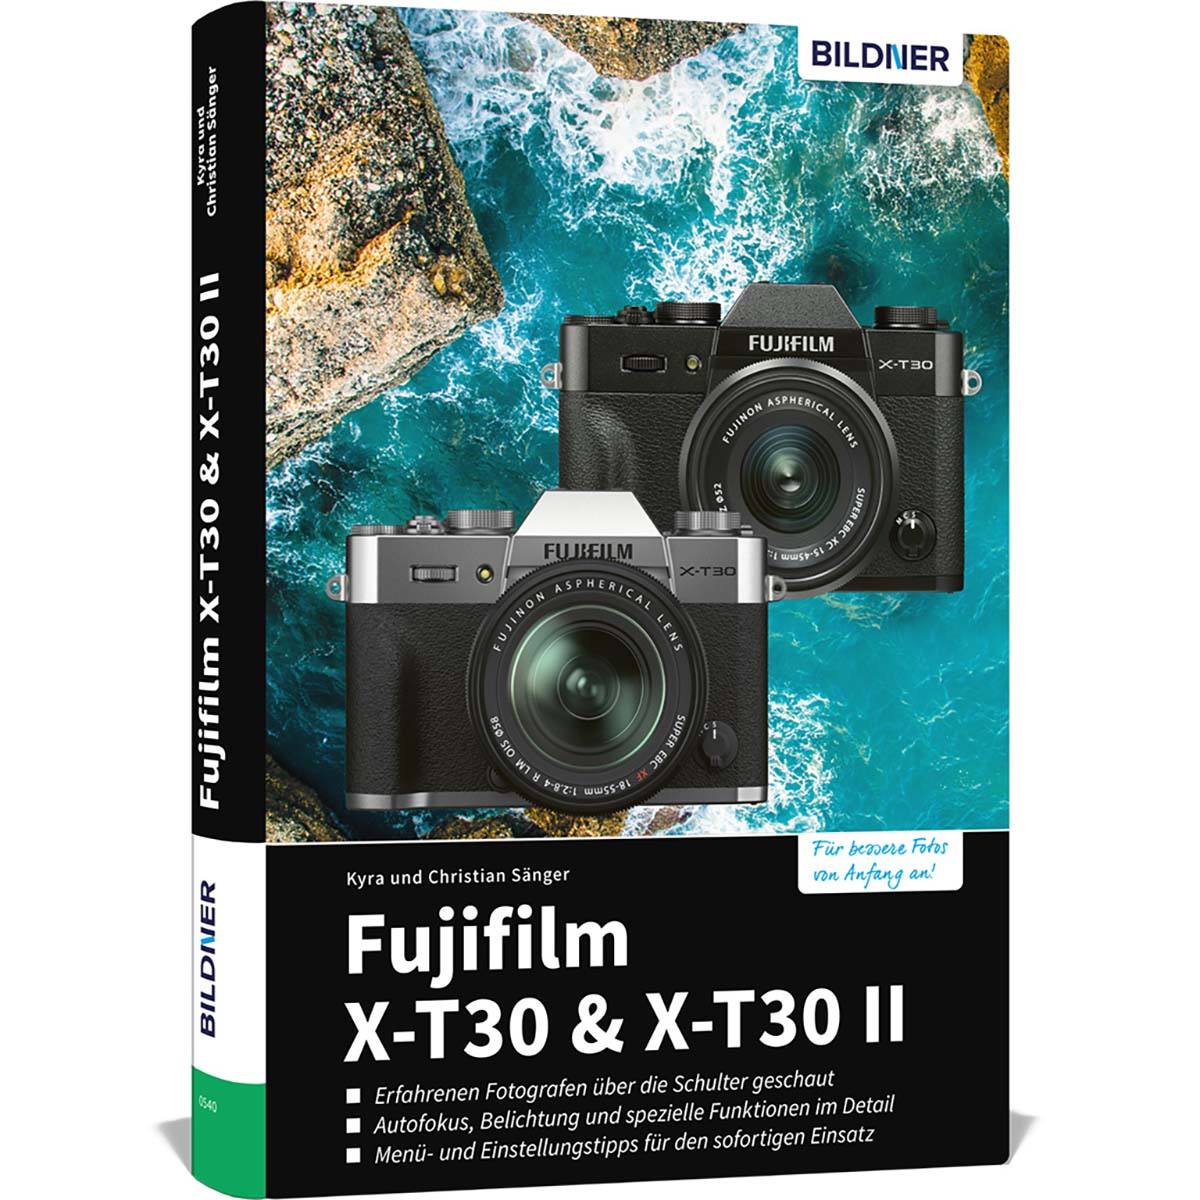 Kamera! Fujifilm X-T30 - X-T30 Ihrer Das / II umfangreiche Praxisbuch zu